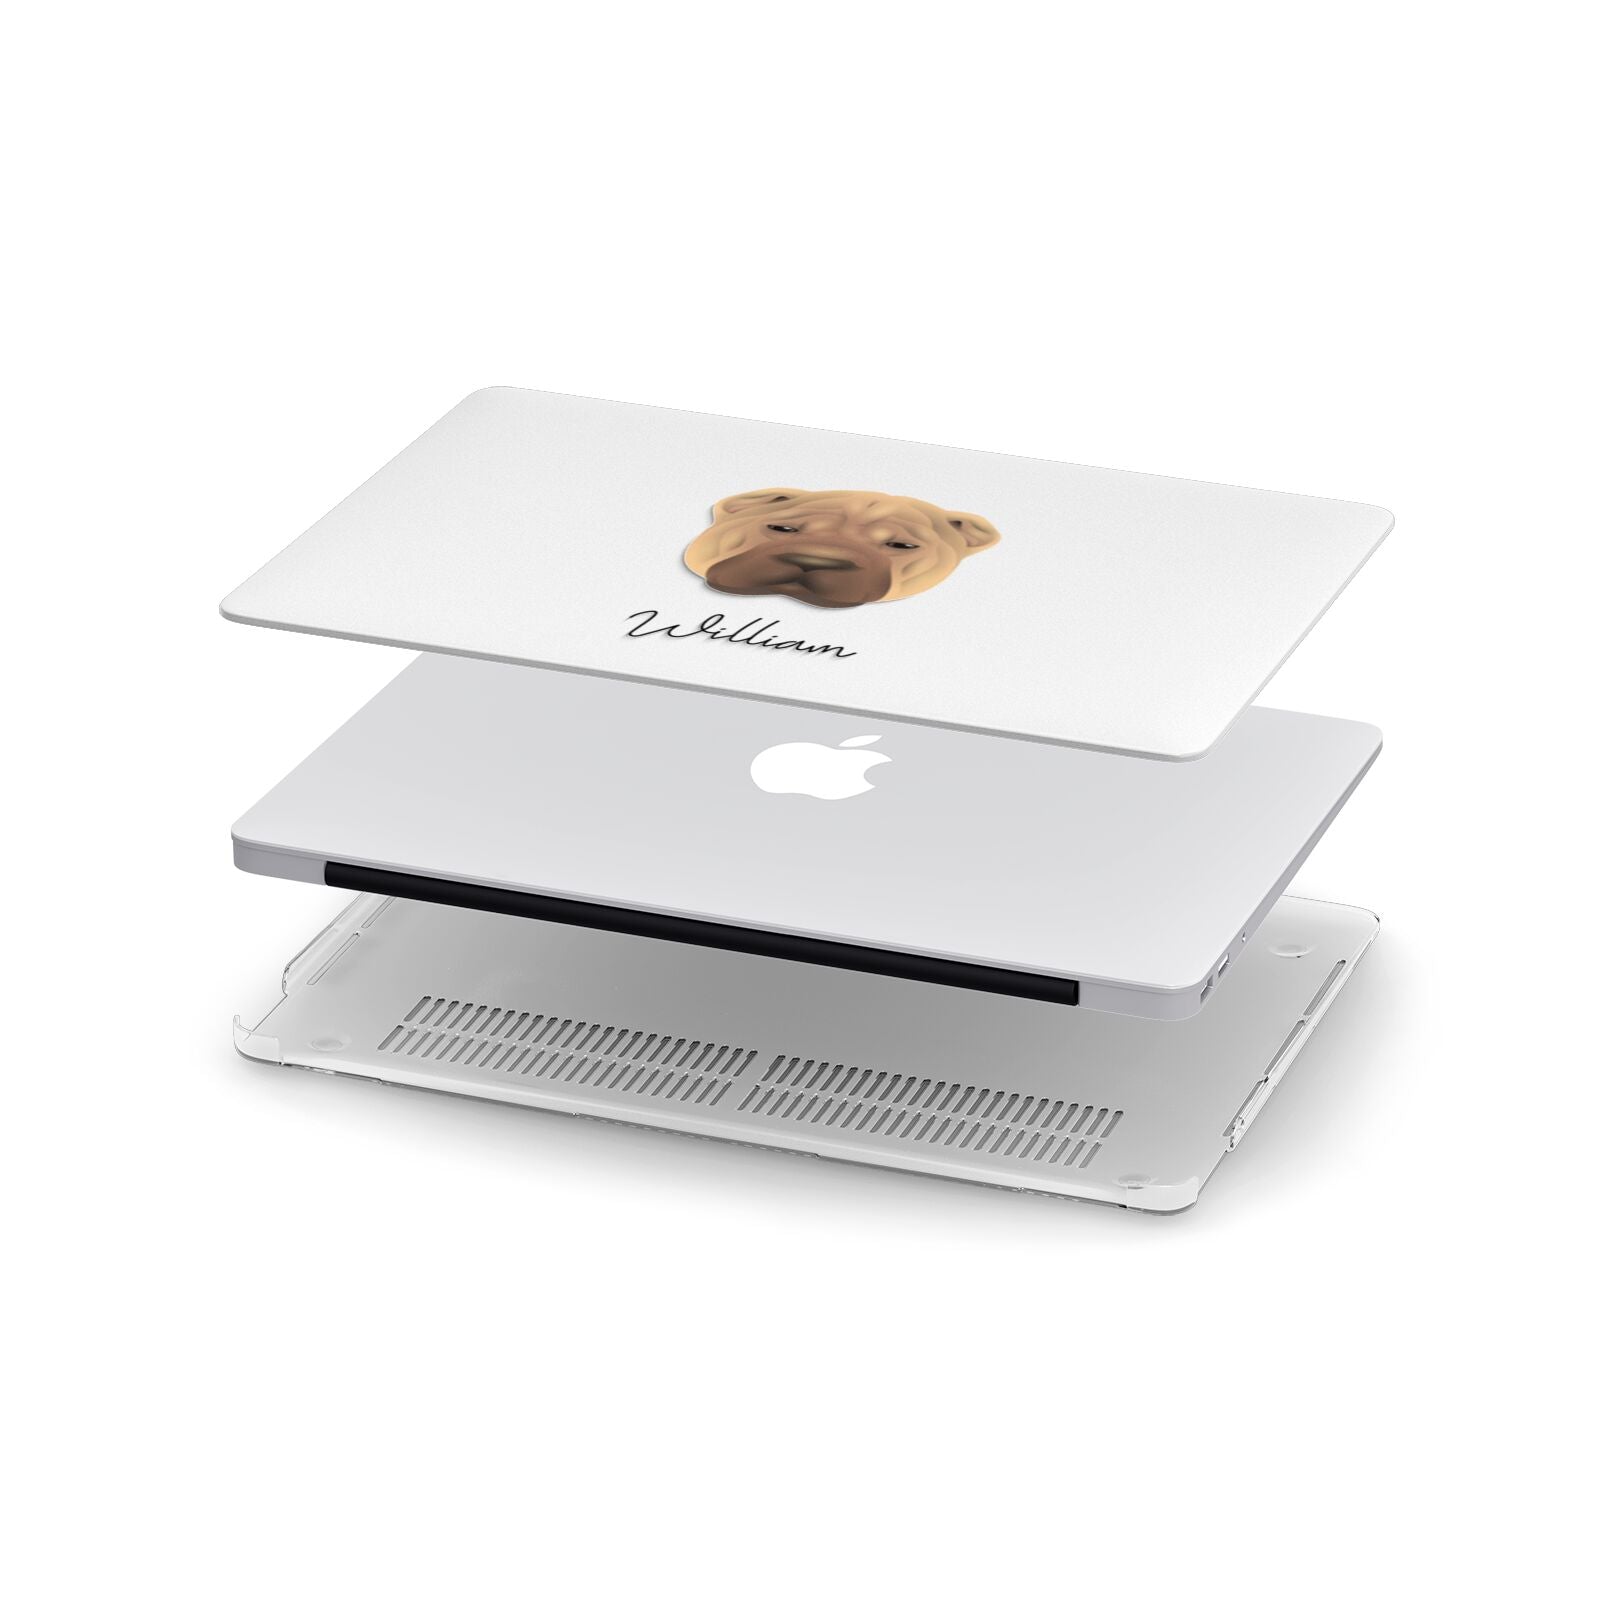 Shar Pei Personalised Apple MacBook Case in Detail